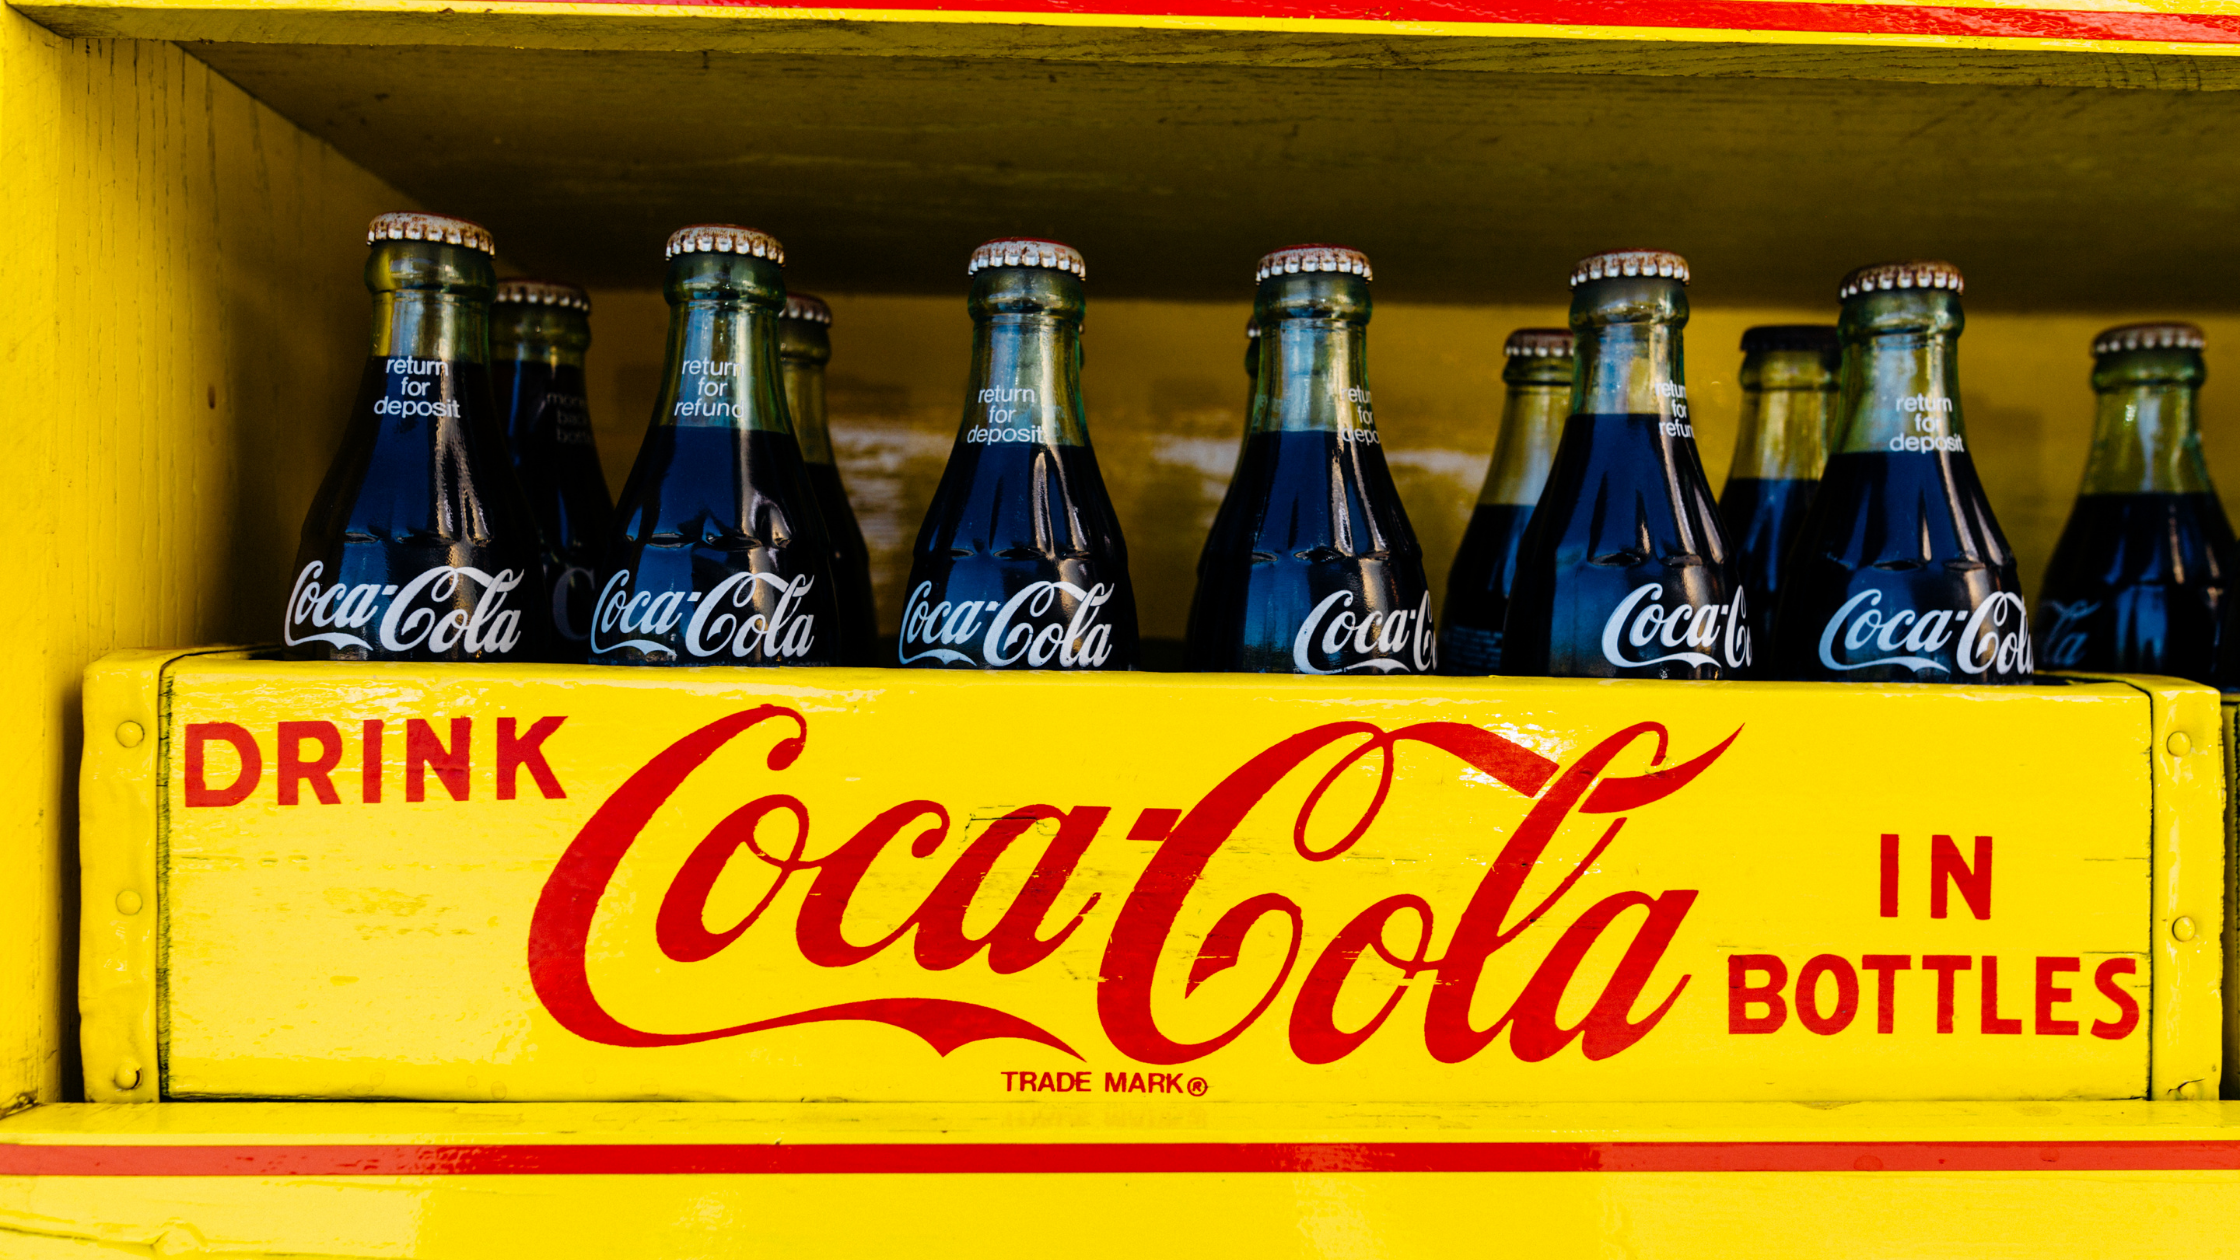 The Original Coca Cola Bottles